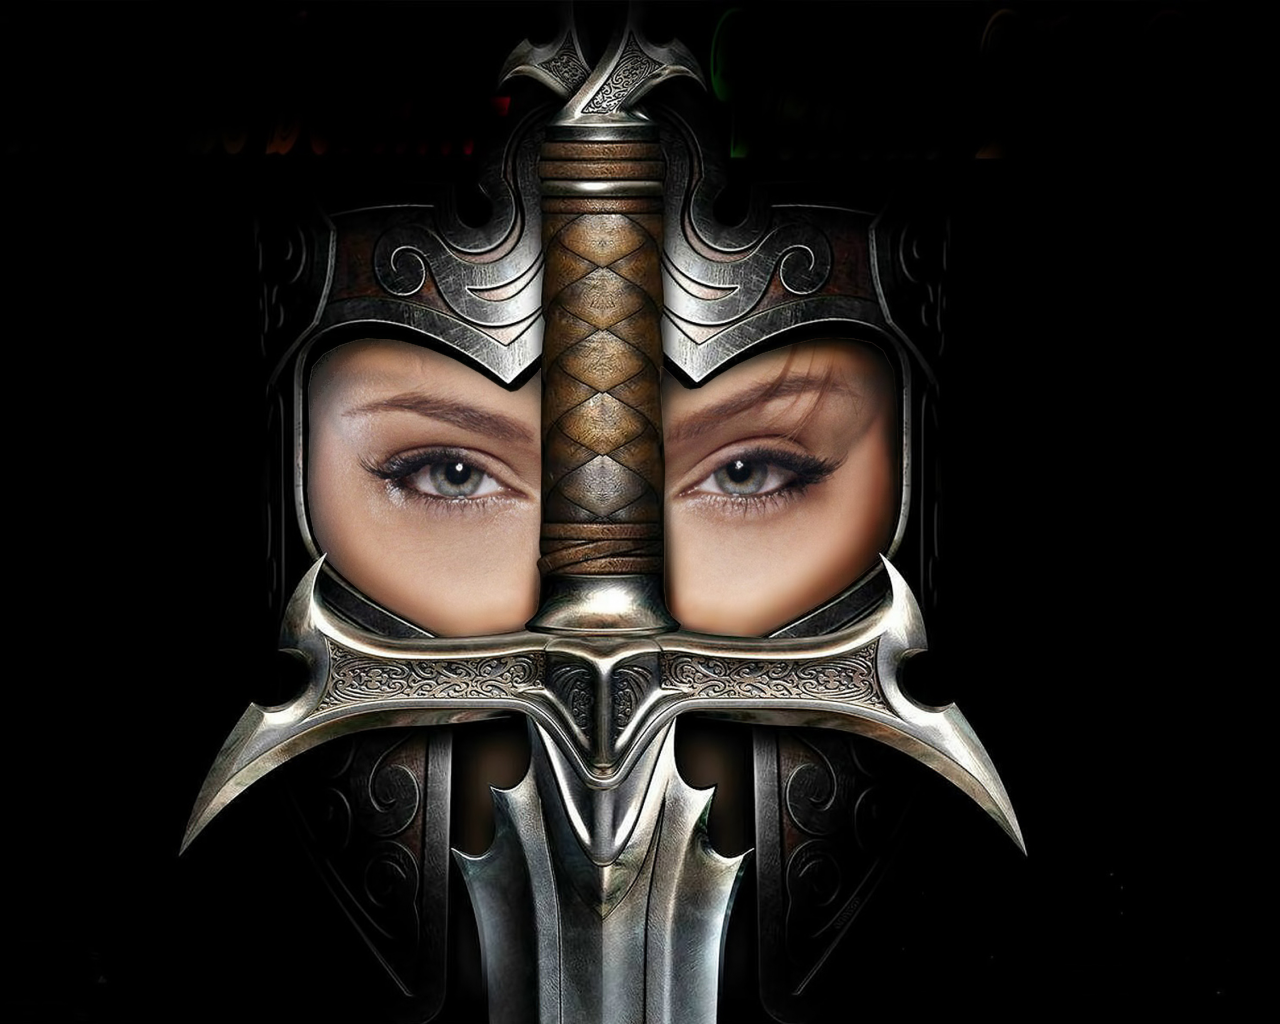 Культ королевства ереси, меч, шлем, девушка